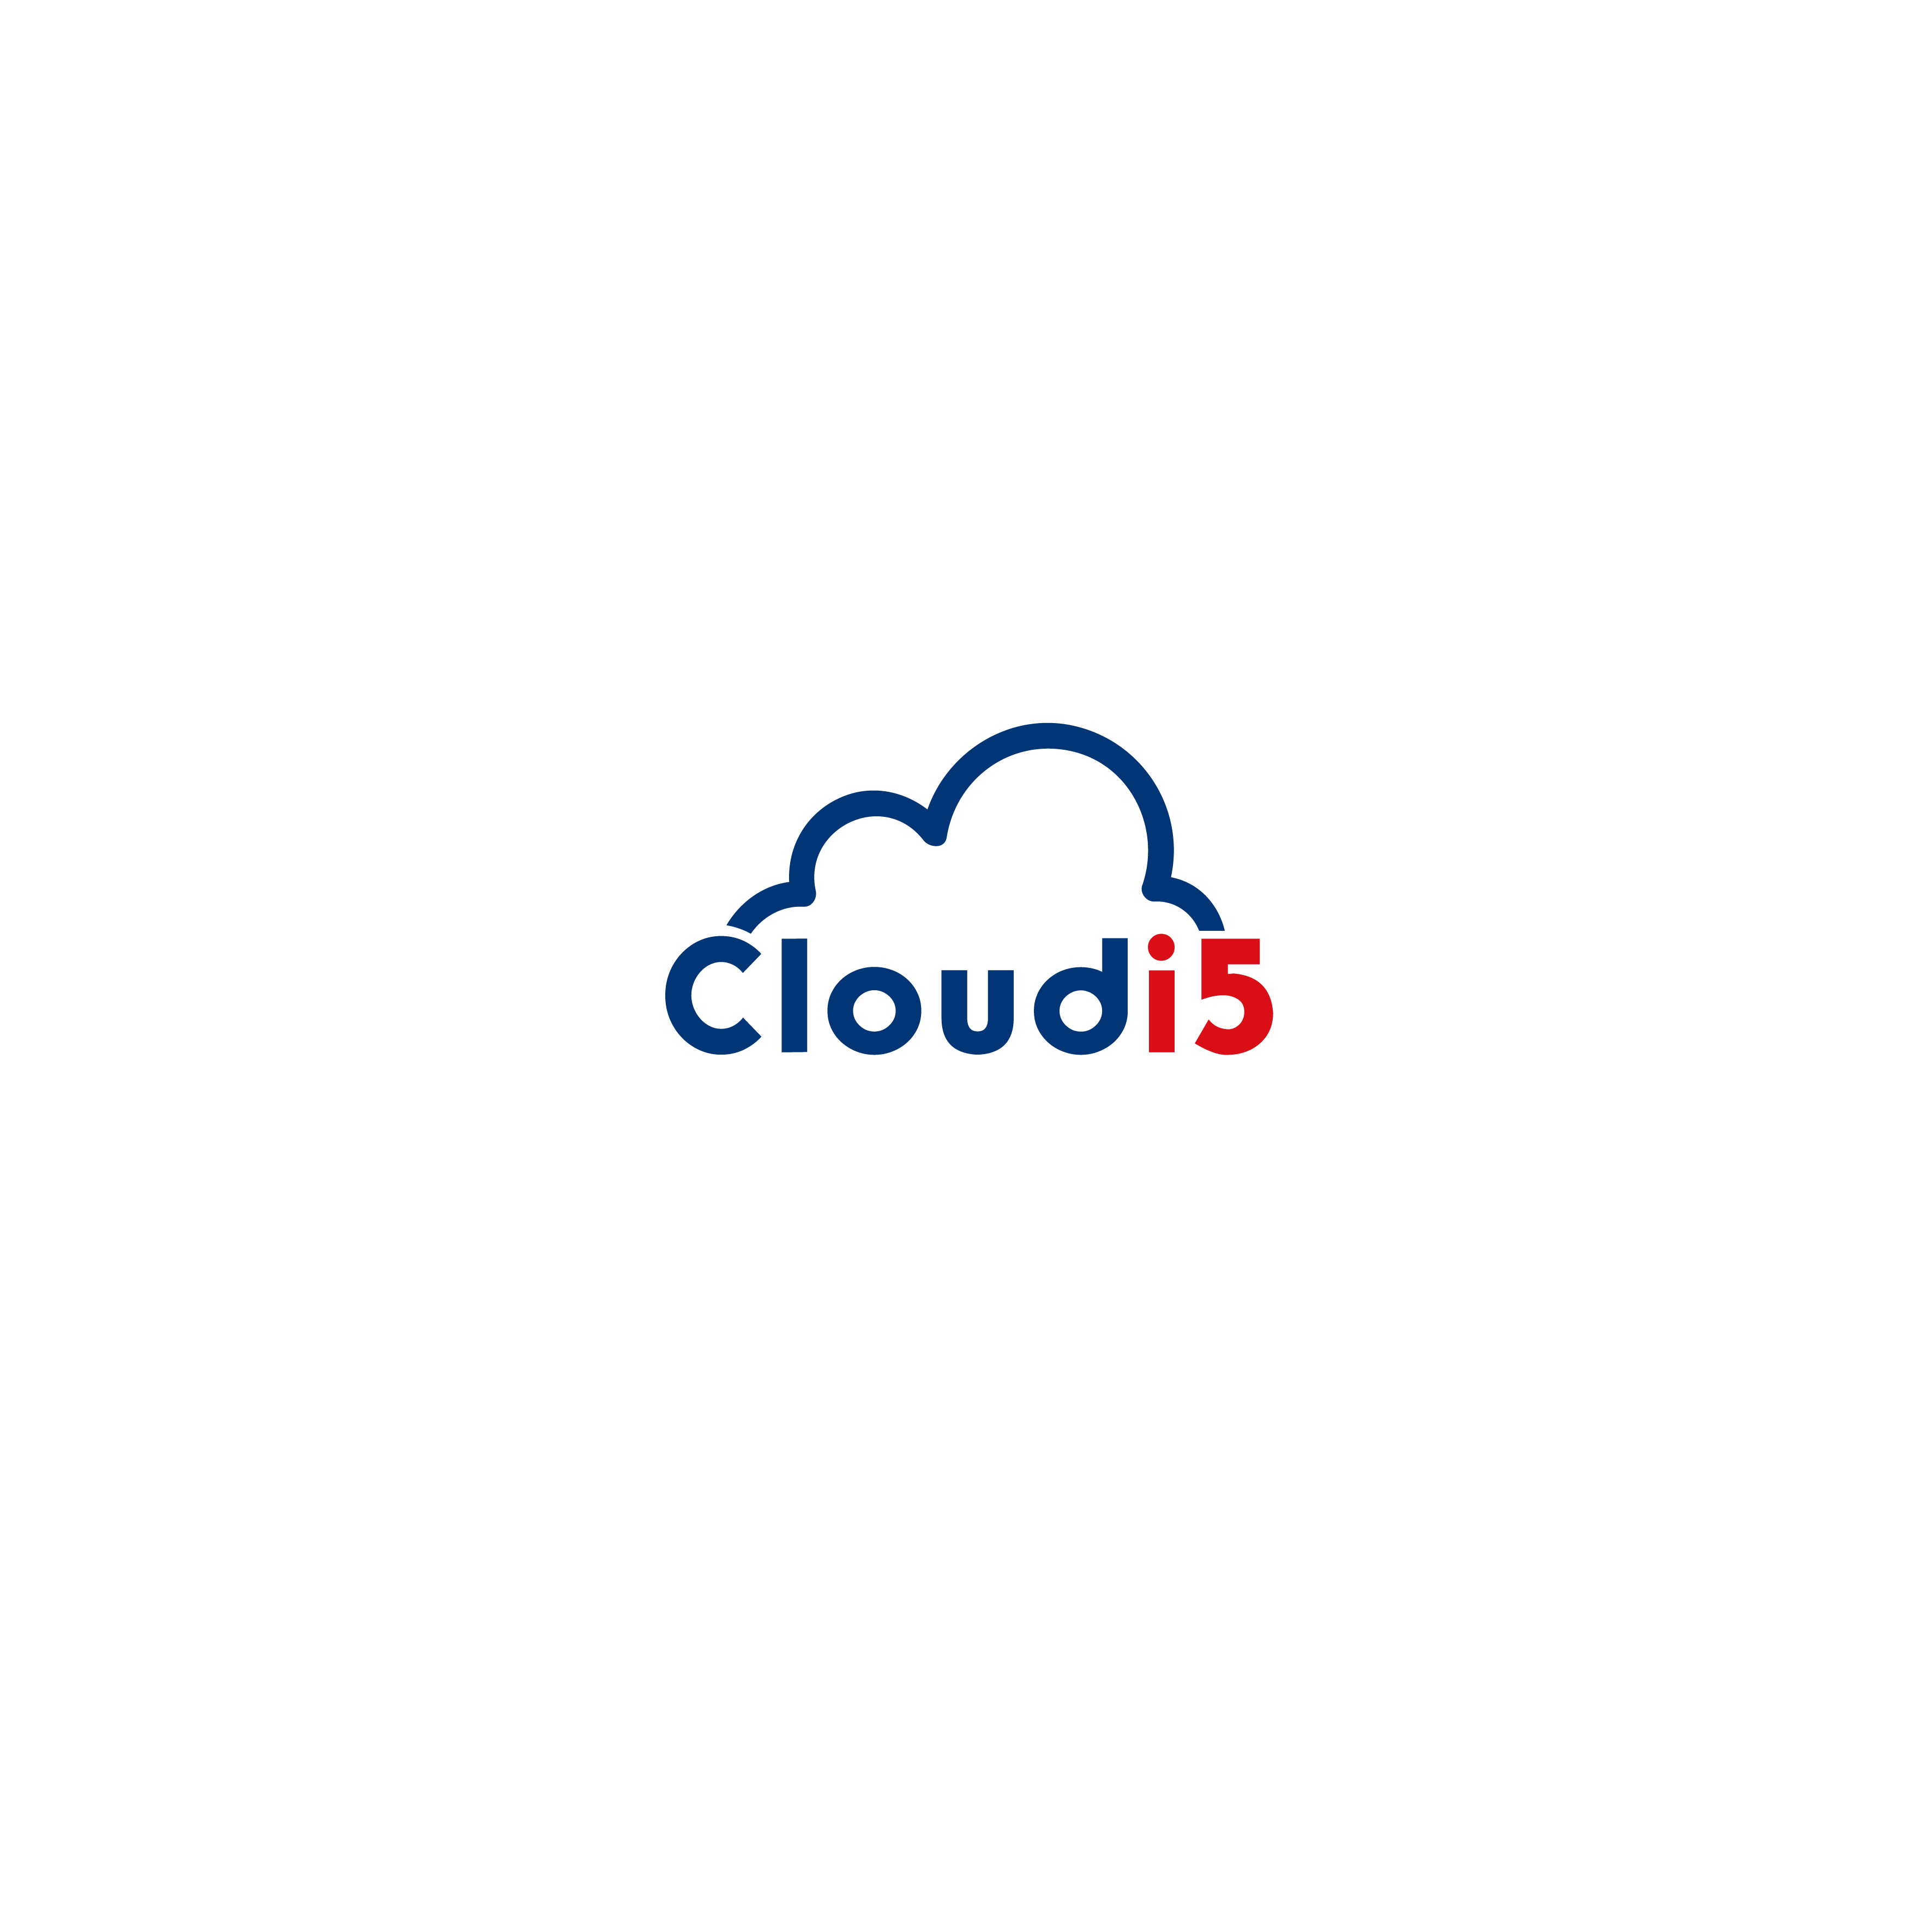 cloudi5tech